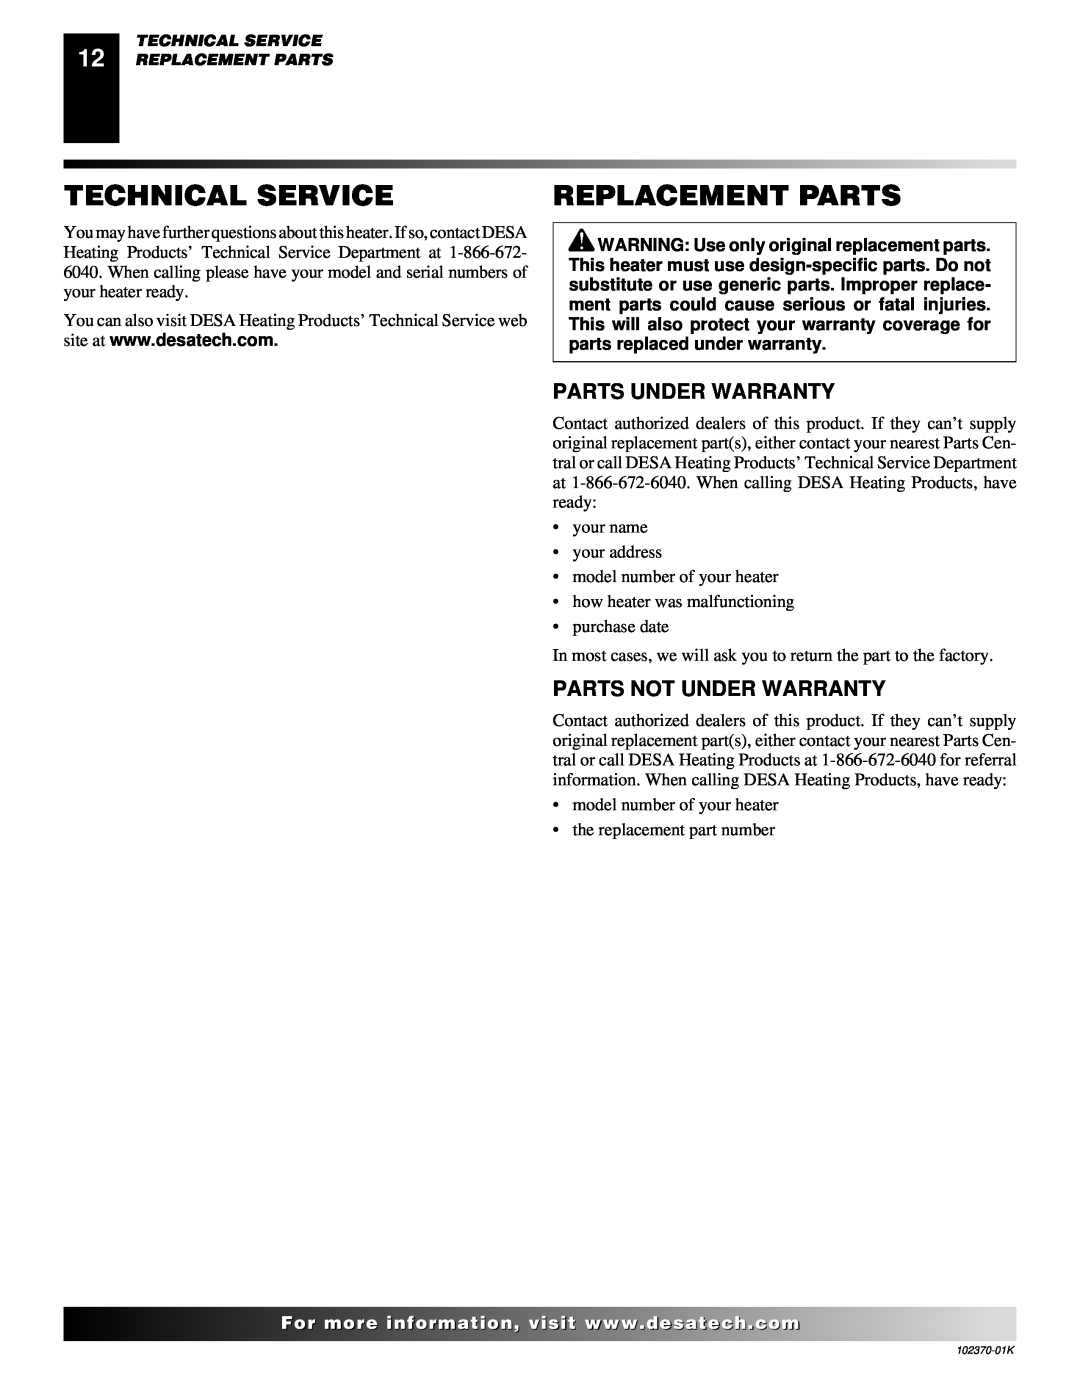 Desa REM100LP, BLP100 owner manual Technical Service, Replacement Parts, Parts Under Warranty, Parts Not Under Warranty 